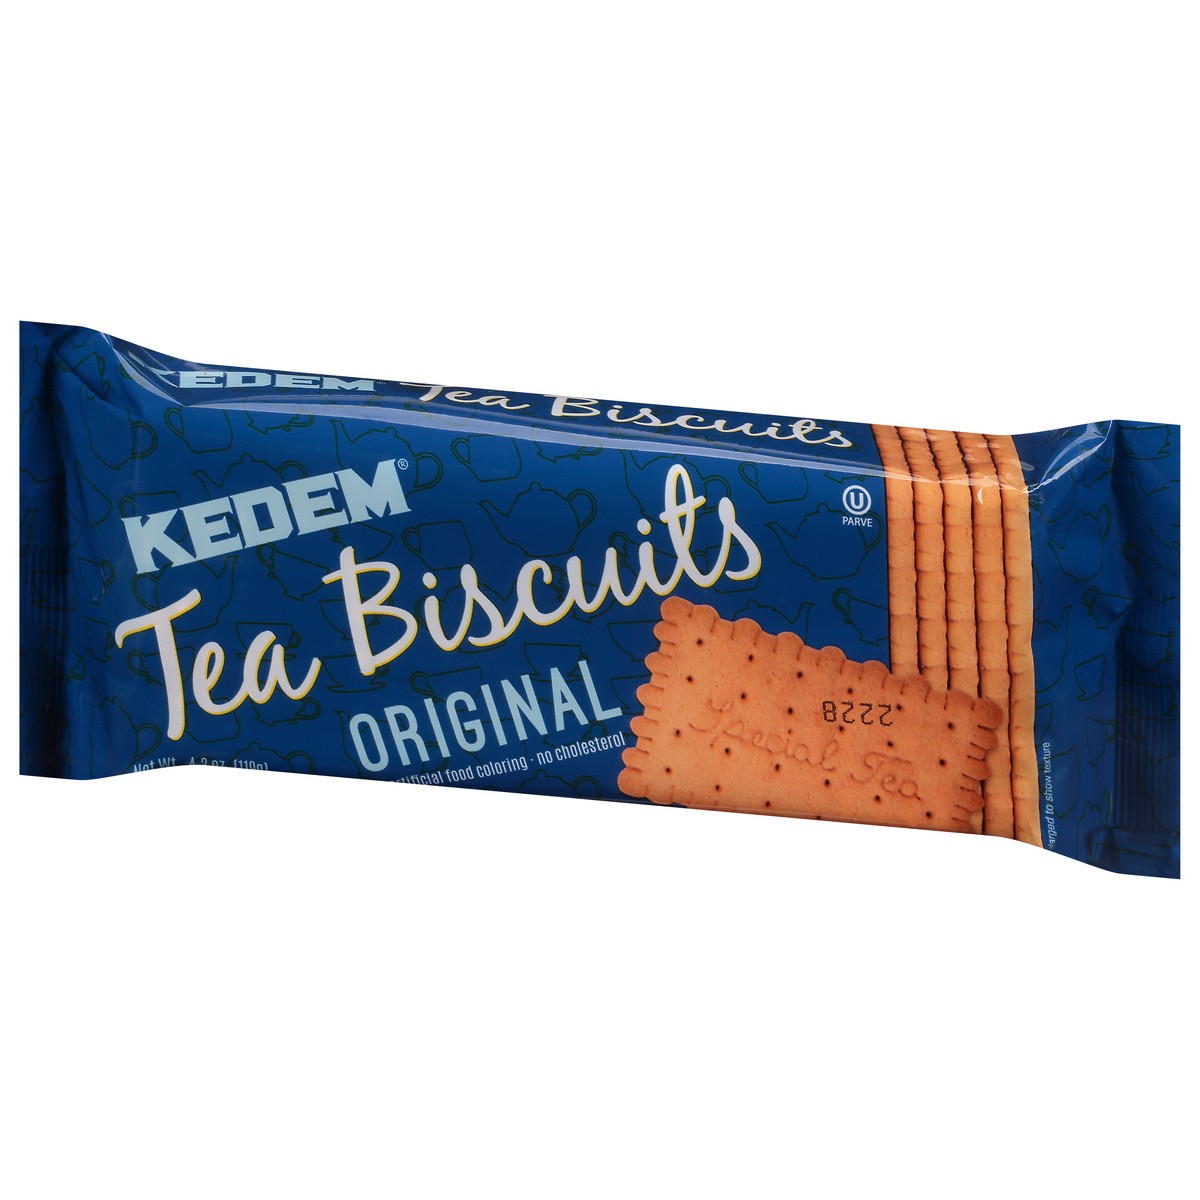 slide 3 of 9, Kedem Original Tea Biscuits 4.2 oz, 4.2 oz